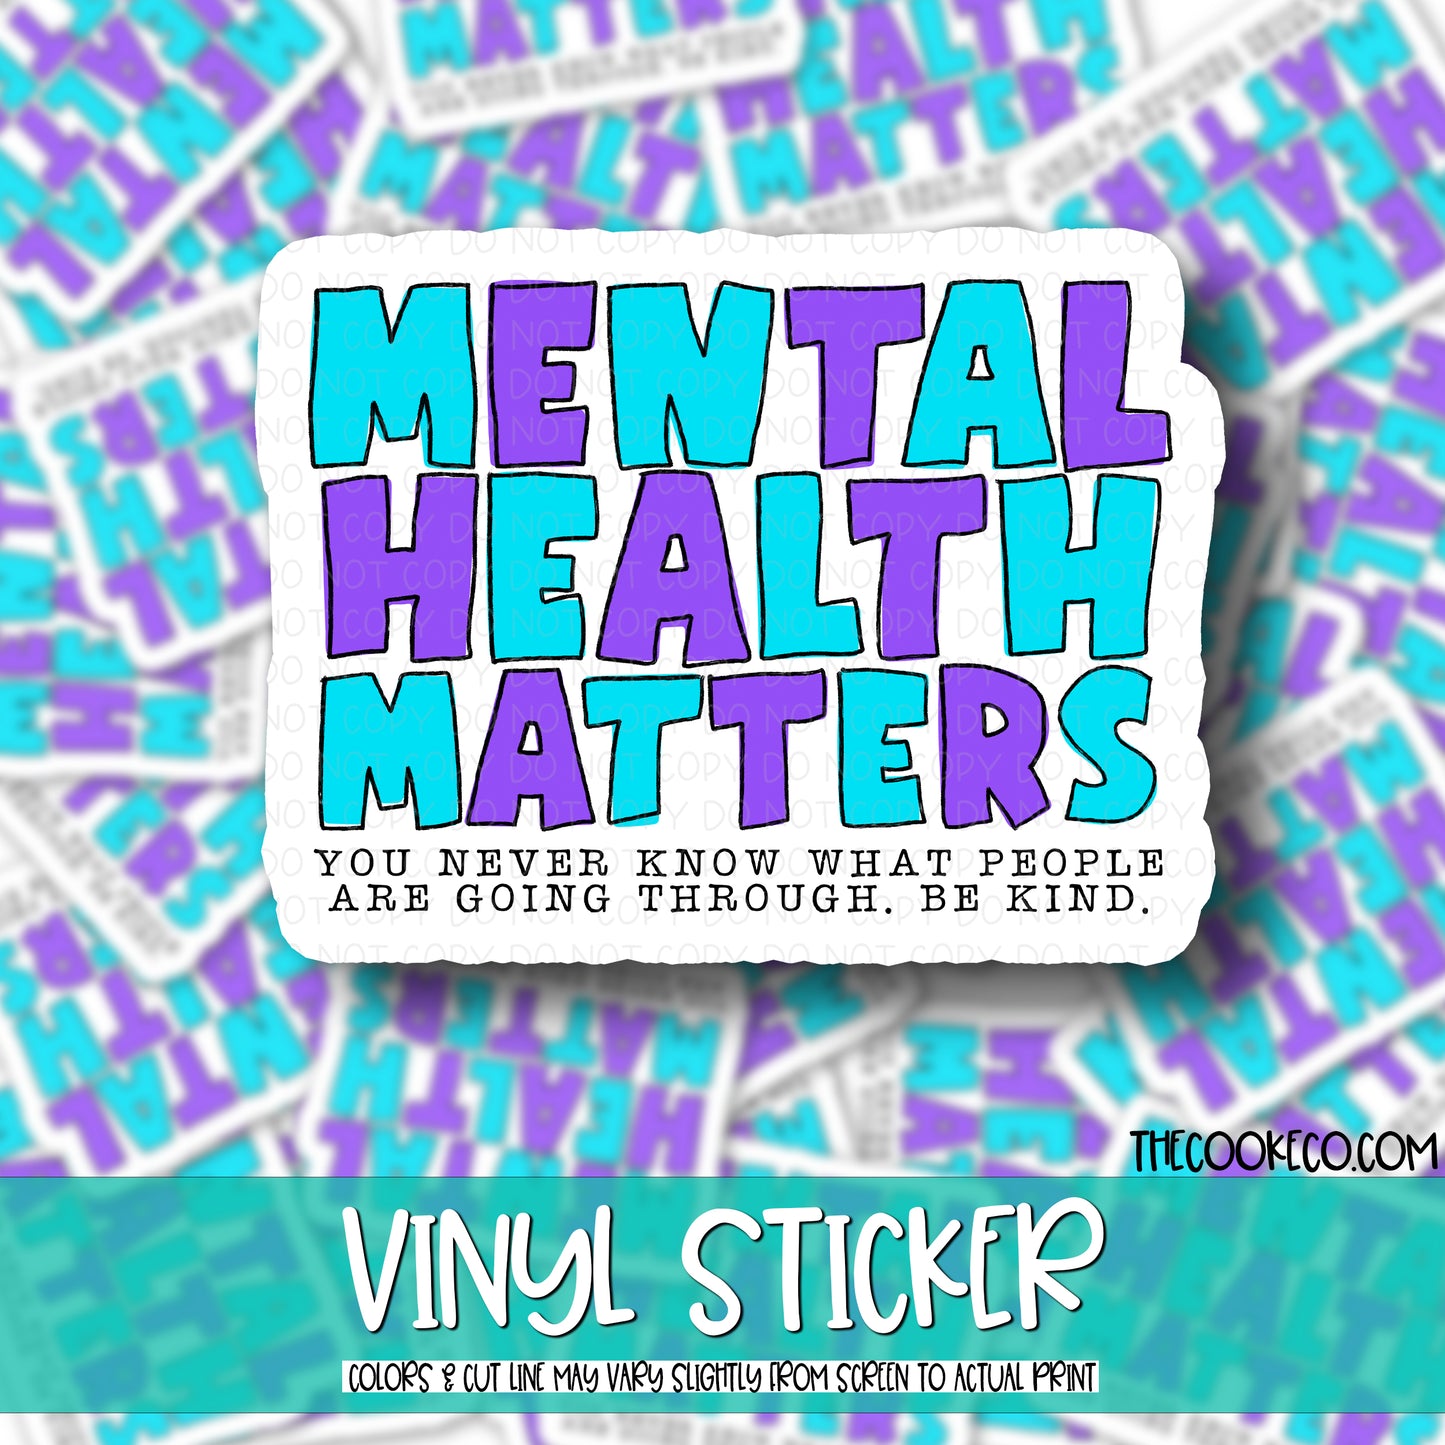 Vinyl Sticker | #V0623 - MENTAL HEALTH MATTERS BE KIND